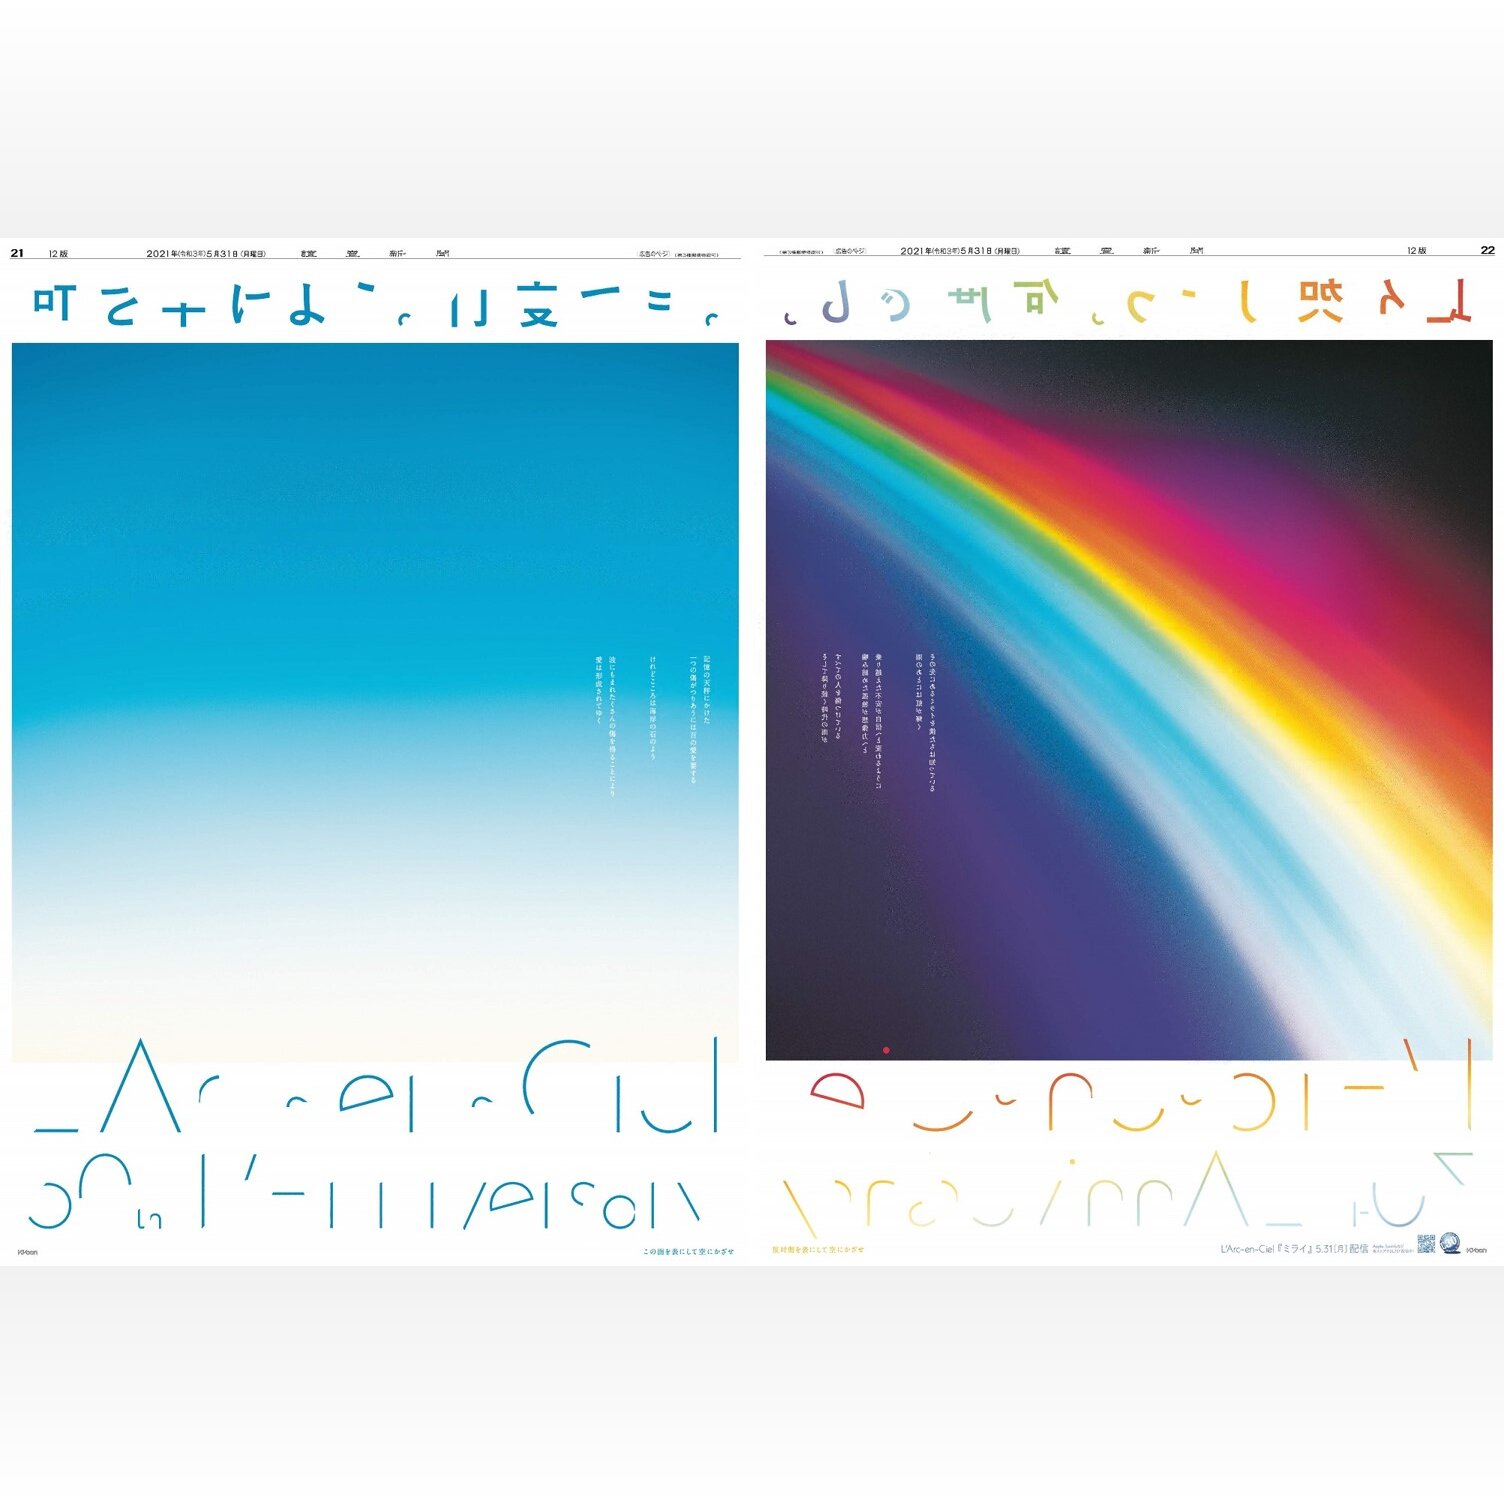 空にかざすと虹、透けて溶け合うメッセージ ラルク30周年広告に熱視線